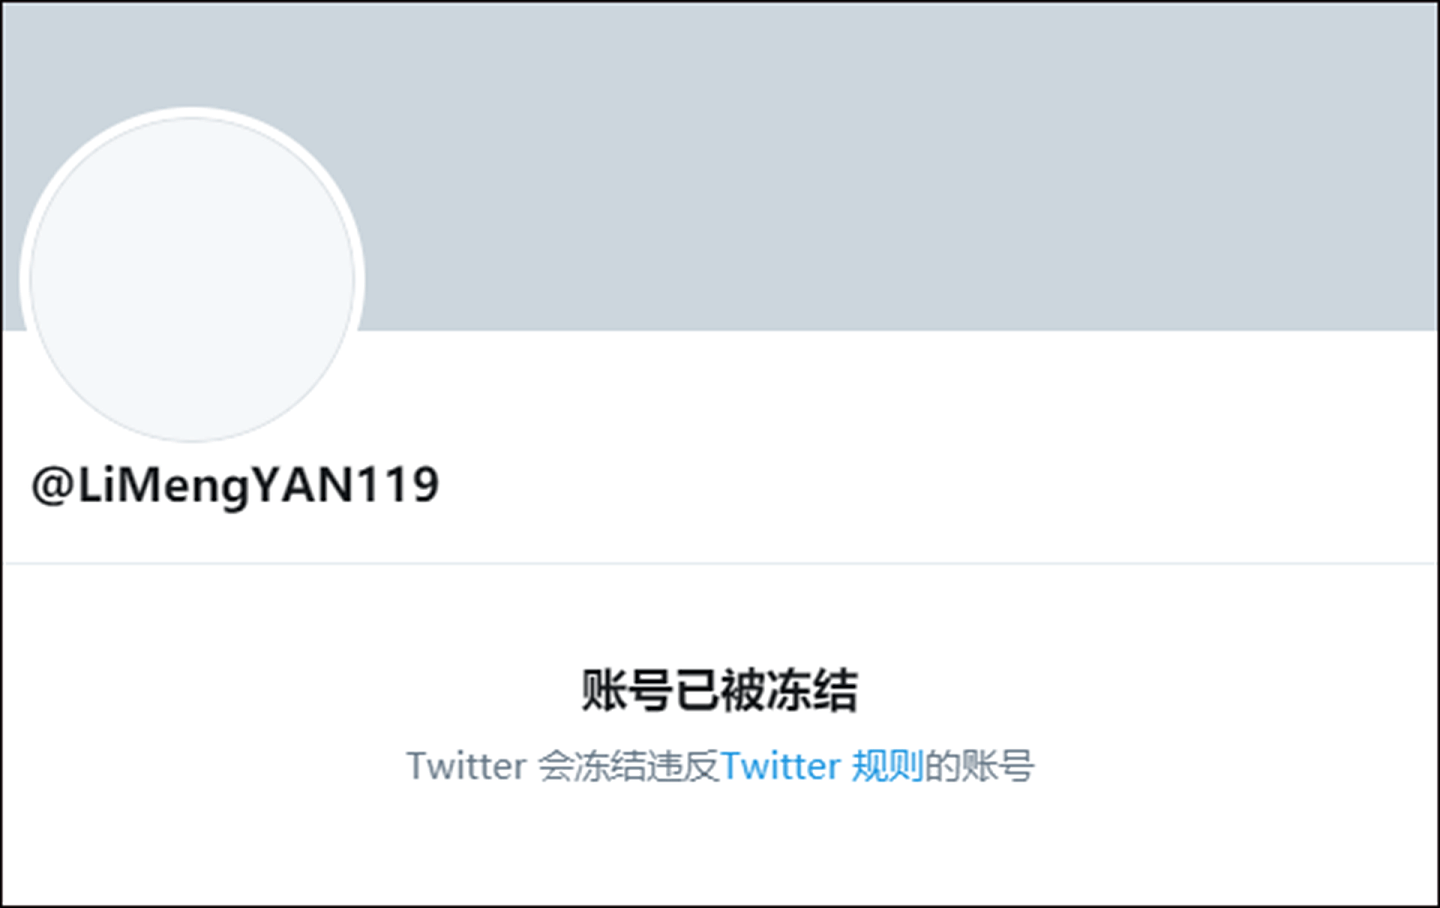 闫丽梦的推特账号被封。 （Twitter@LiMengYAN119）